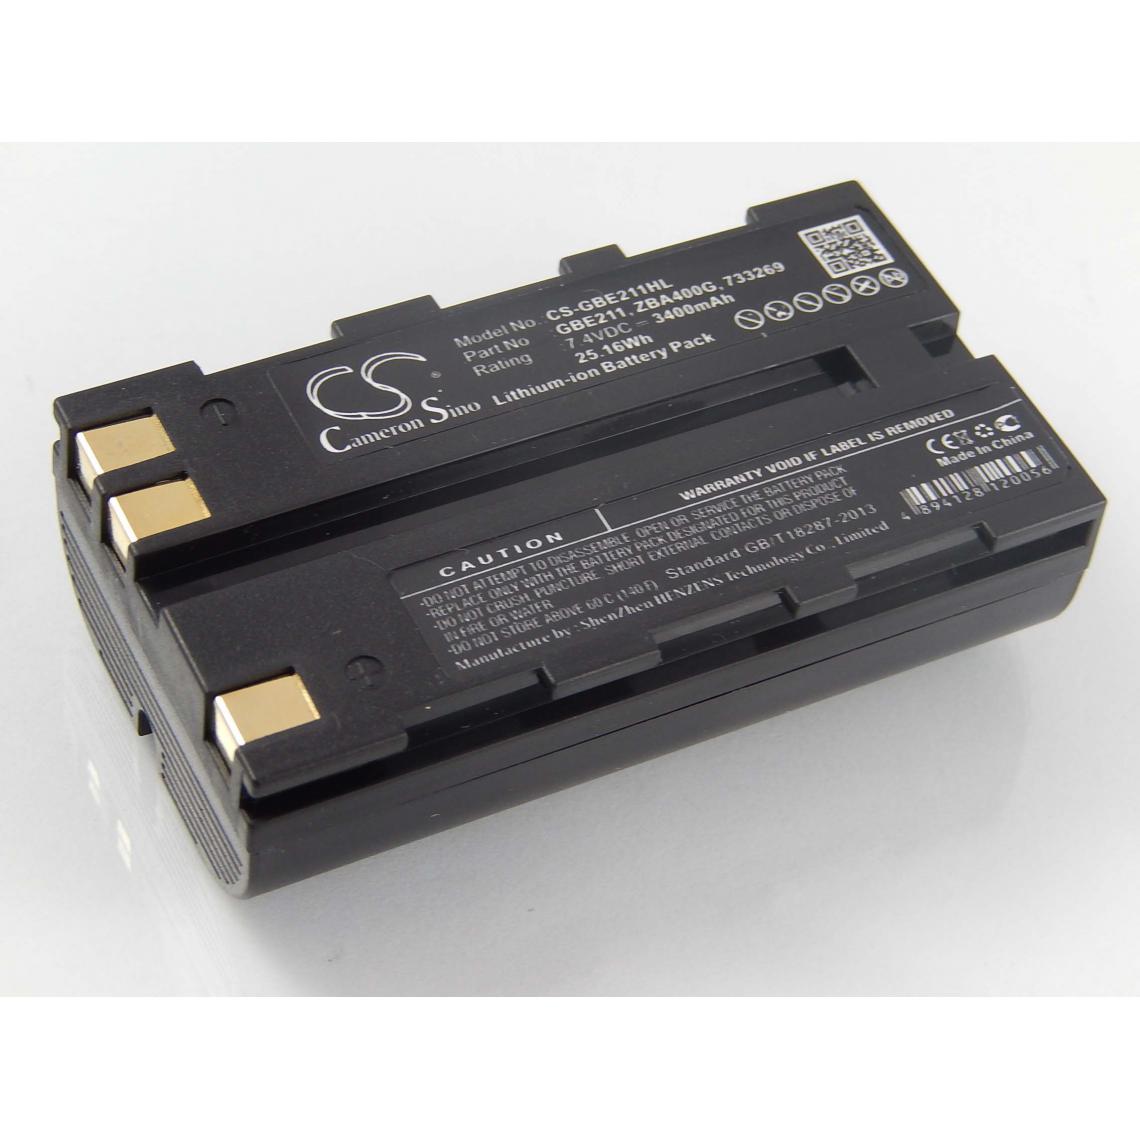 Vhbw - vhbw Batterie remplacement pour Leica GEB212, GEB221, GEB90 pour dispositif de mesure laser, outil de mesure (3400mAh, 7,4V, Li-ion) - Piles rechargeables